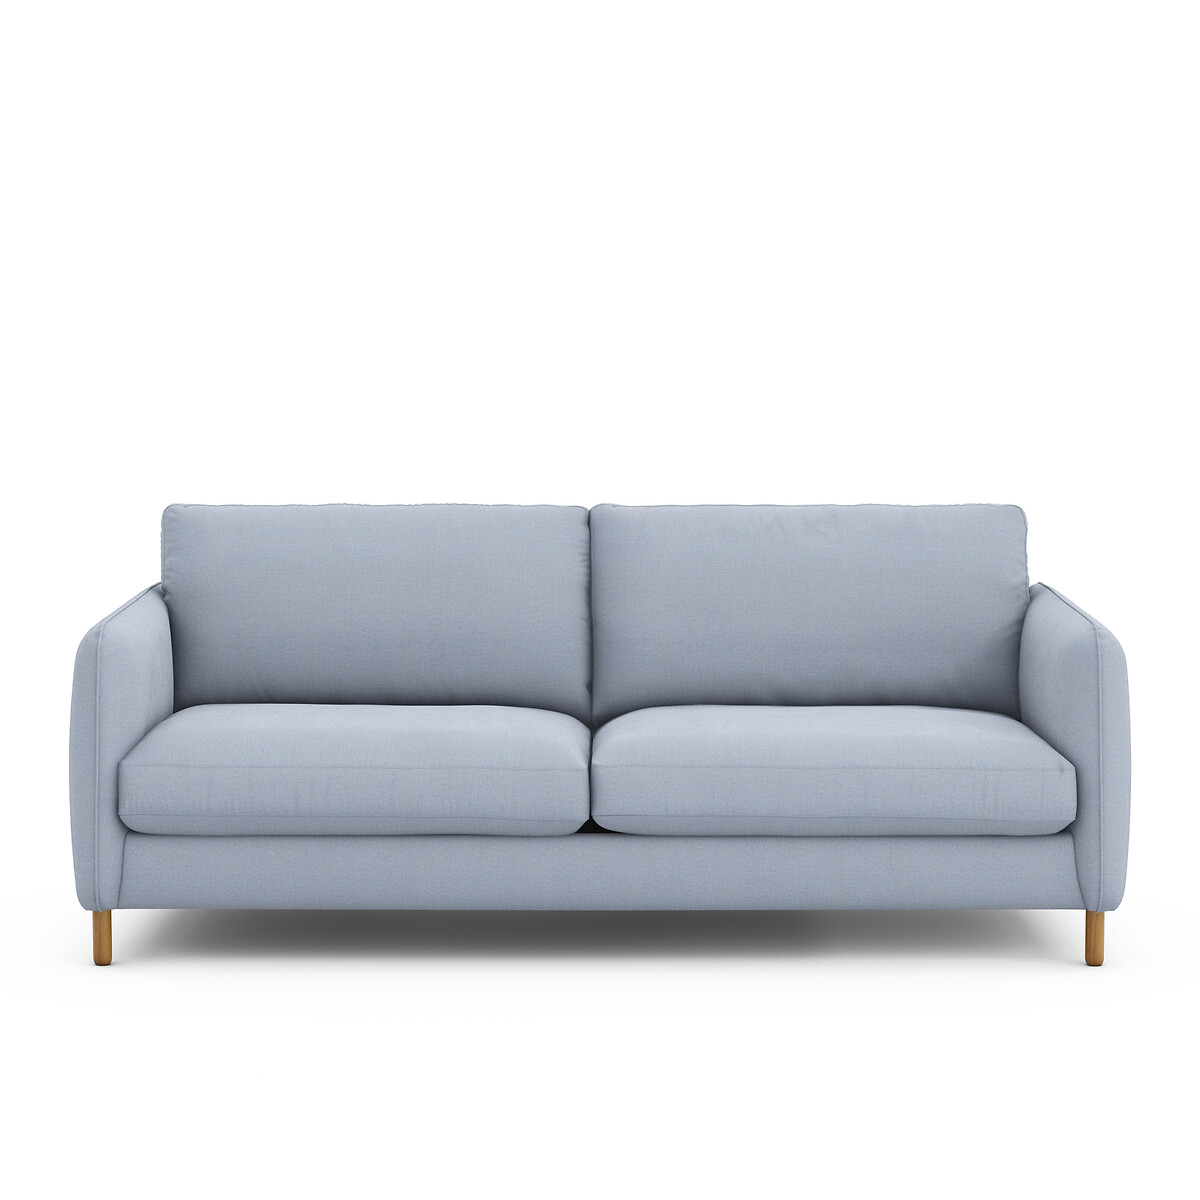 Las patas para muebles y sofás son nuestro nuevo producto estrella